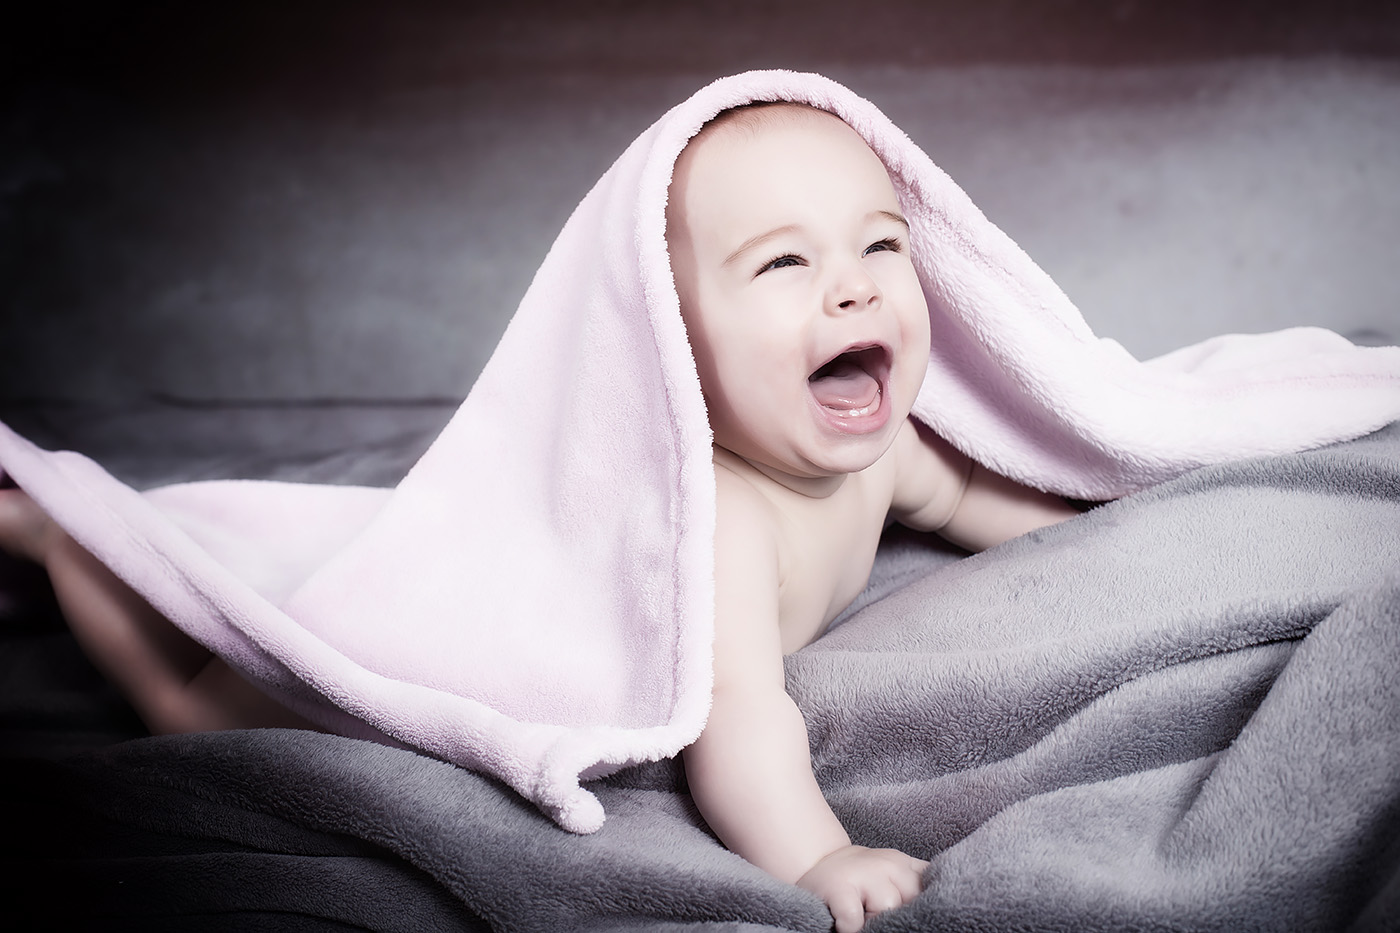 Ein Baby liegt auf einer Decke und schaut lachend unter einem Handtuch hervor